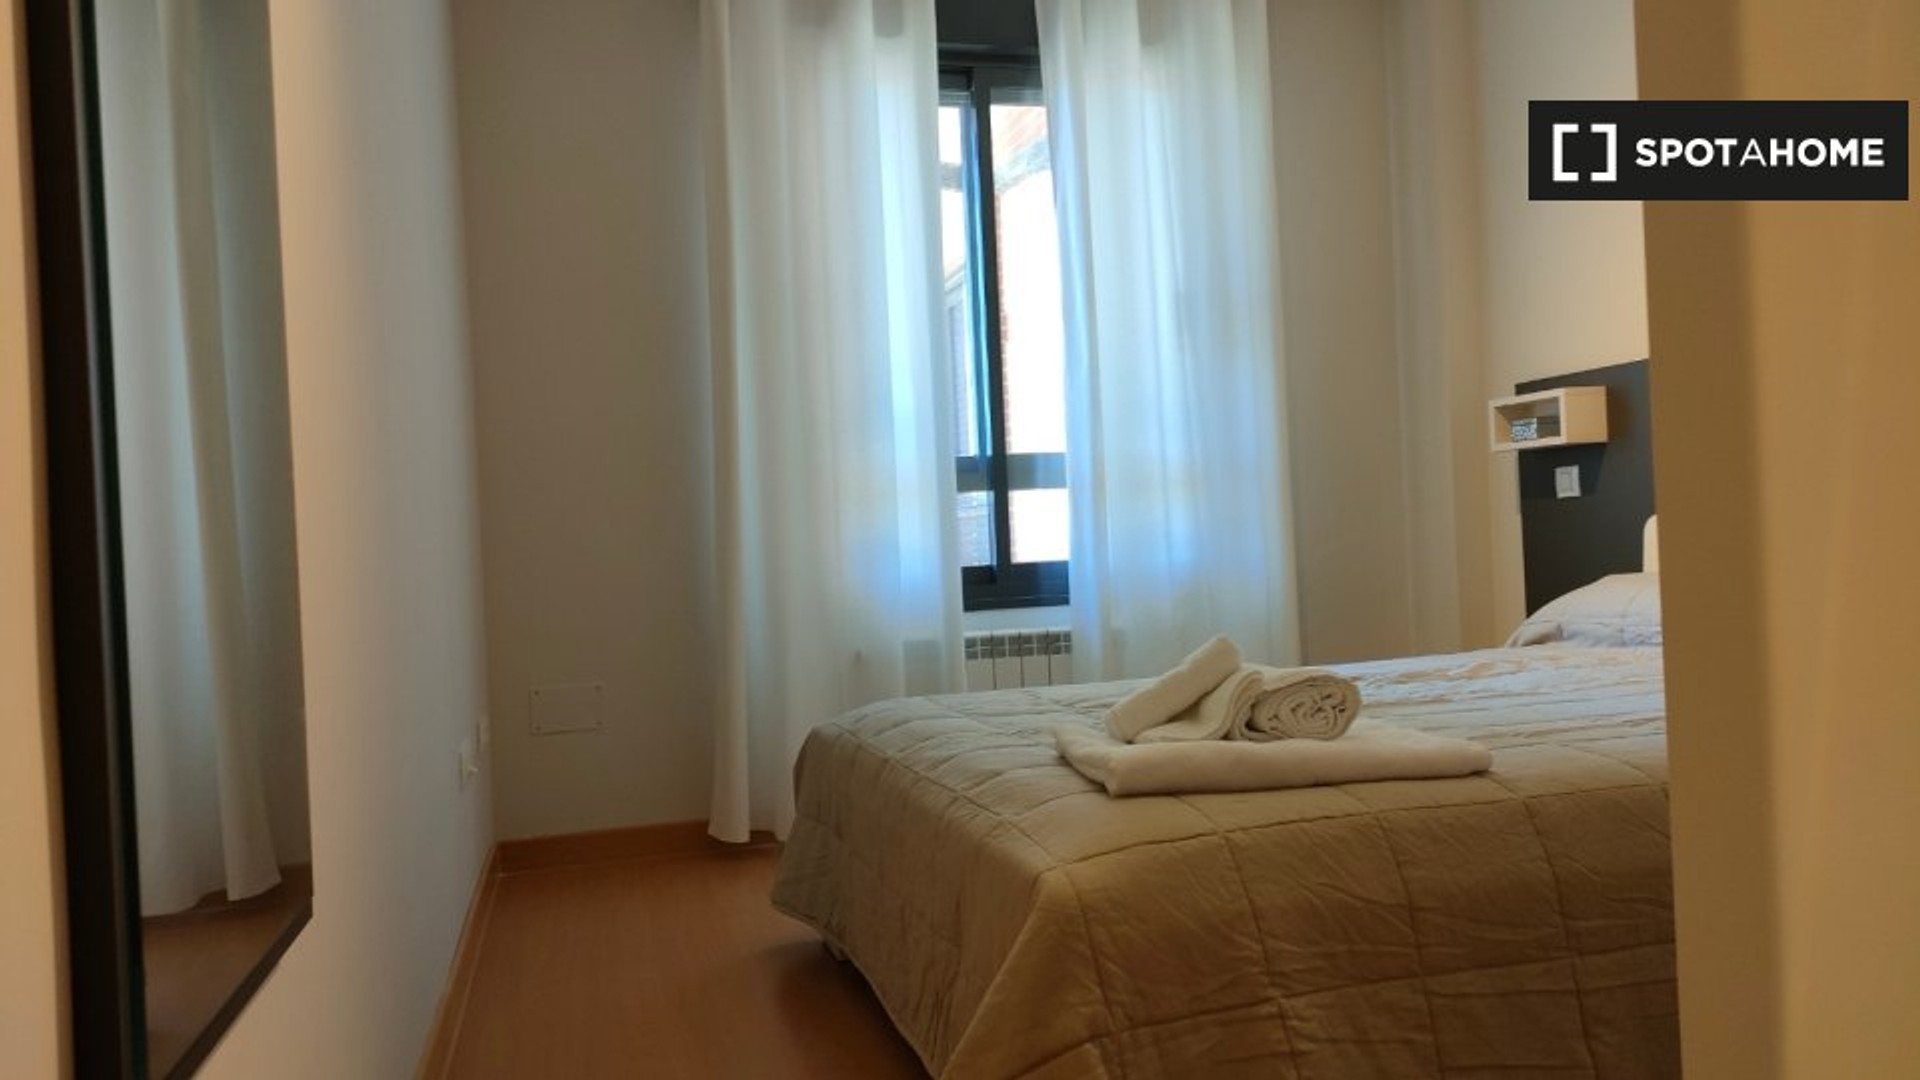 Apartamento moderno y luminoso en Alcalá De Henares